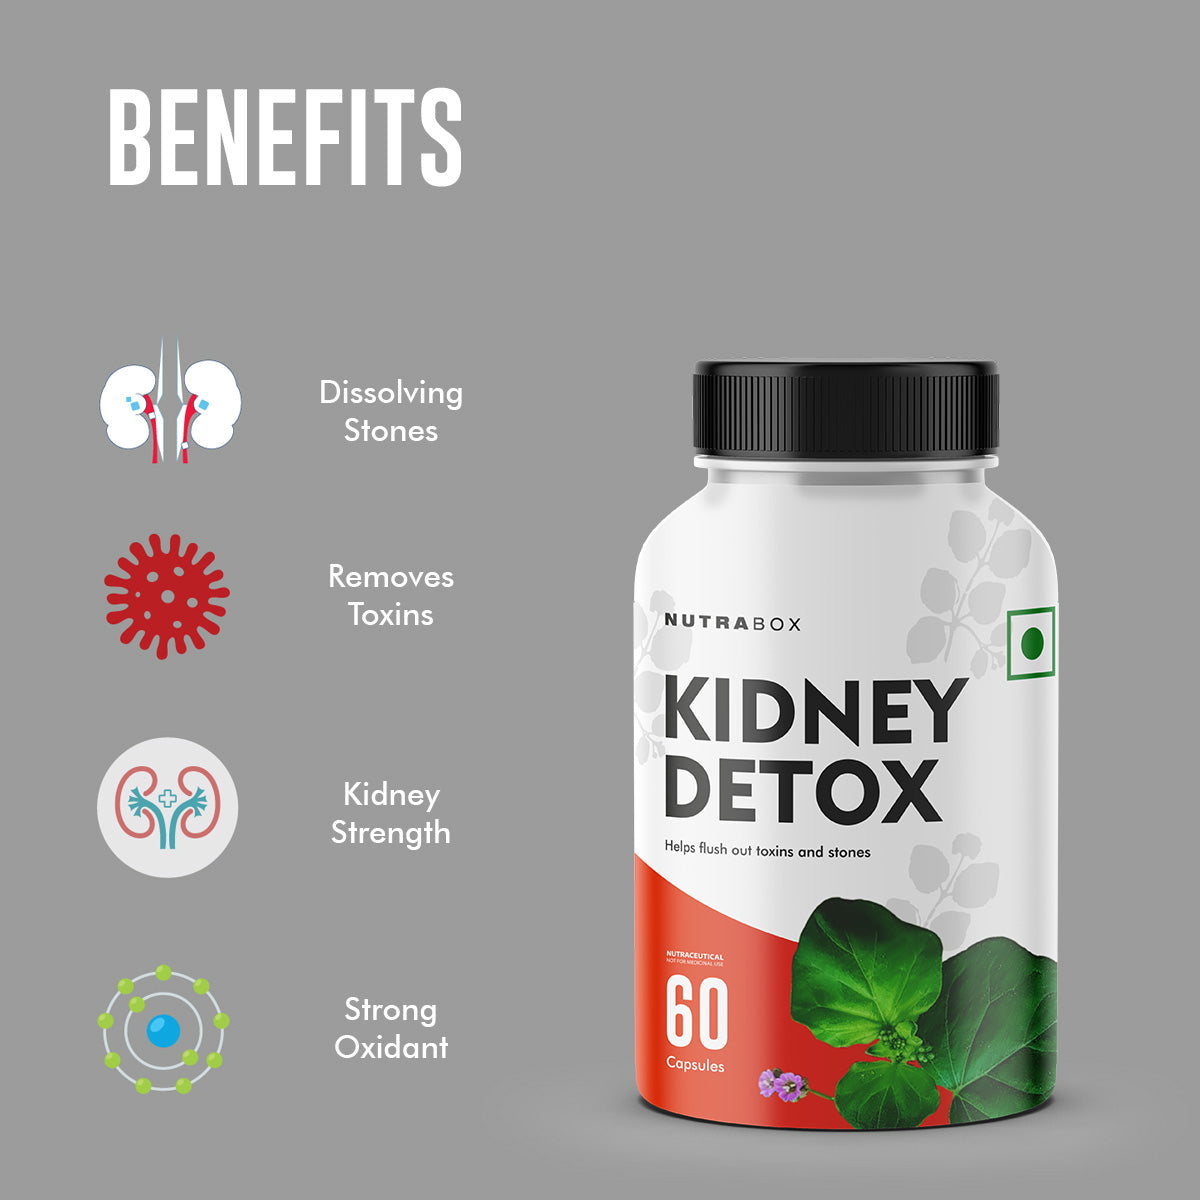 Benefits of Kidney Detox